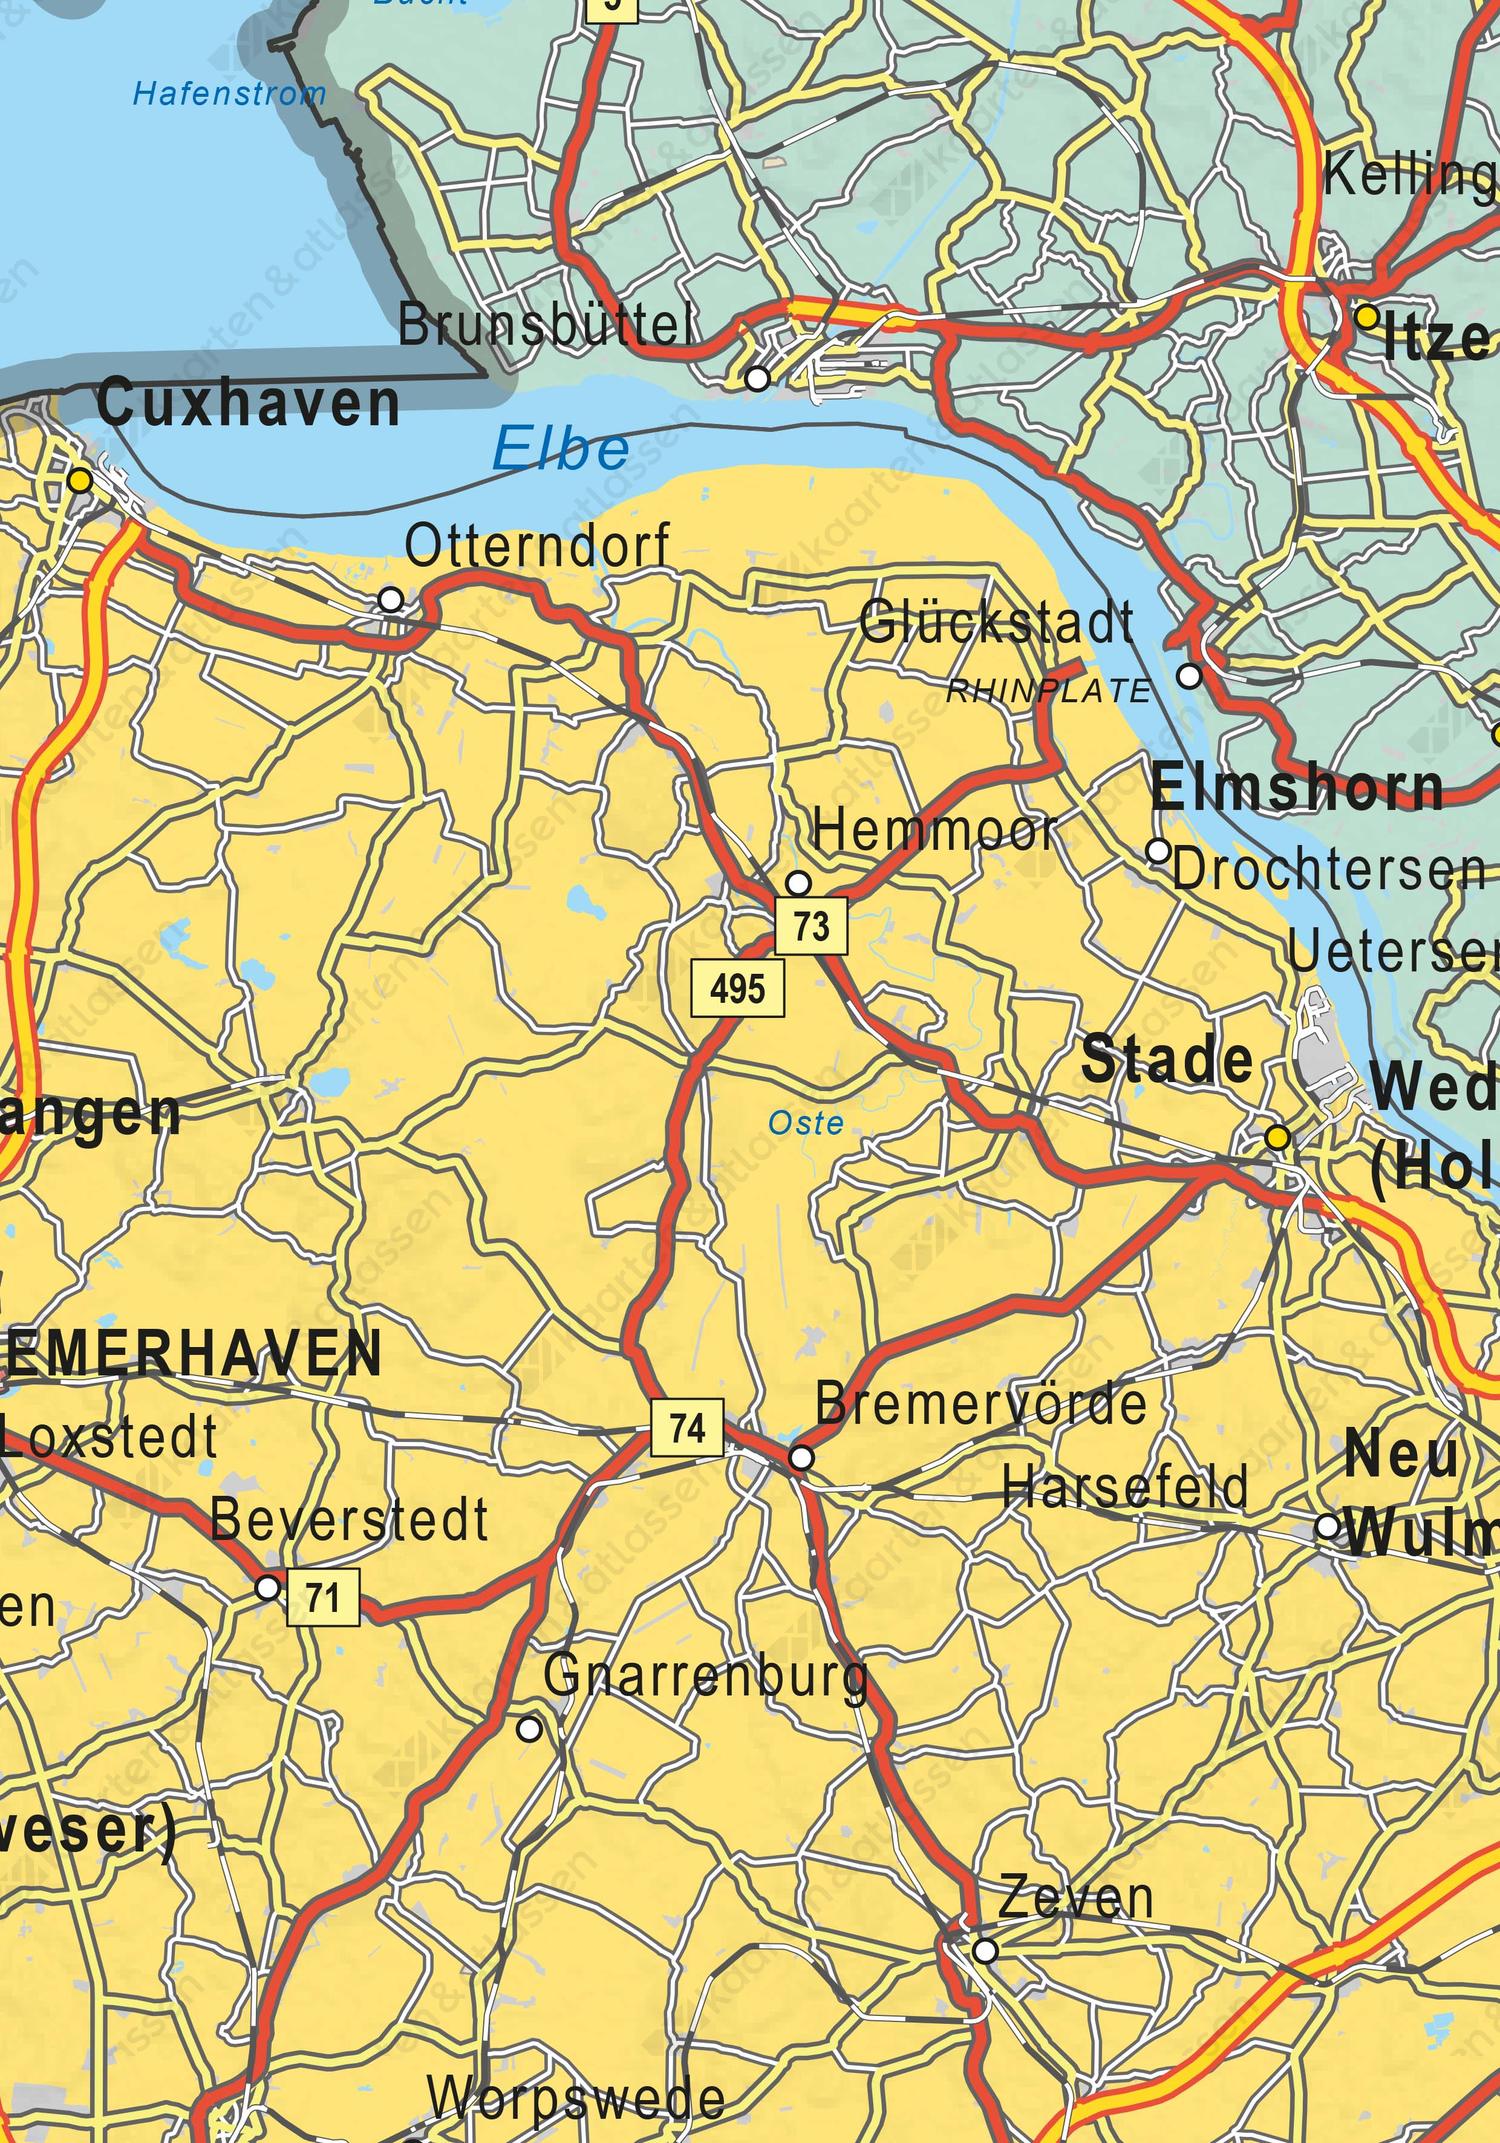 Minachting lettergreep Afstoting Whiteboard Noord-Duitsland 1564 | Kaarten en Atlassen.nl